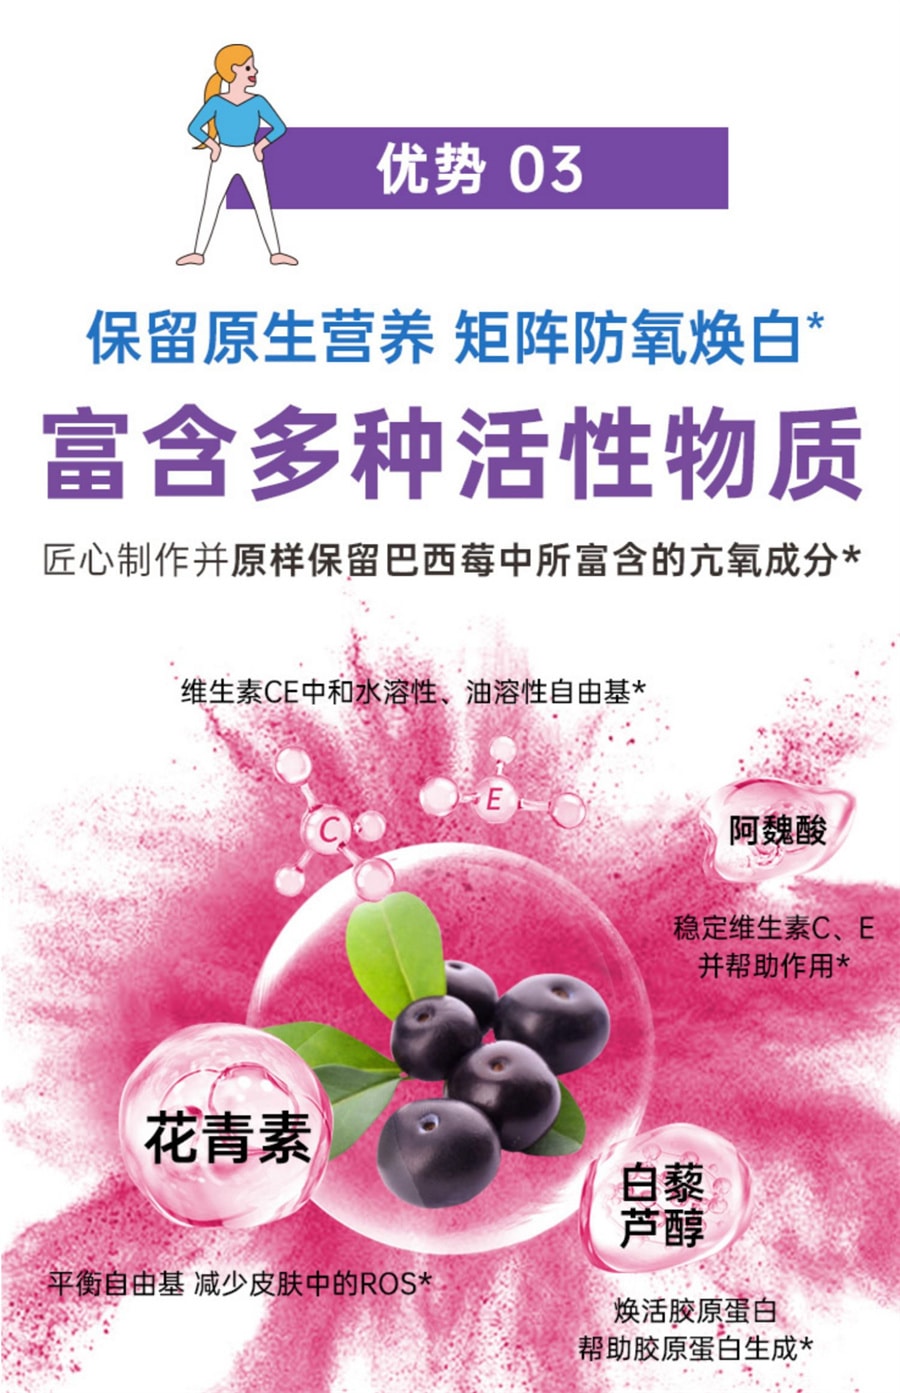 【中国直邮】自律农场   巴西莓粉果蔬纤维粉超级食物抗自由基氧化无蔗糖袋装冲饮粉   120g/袋